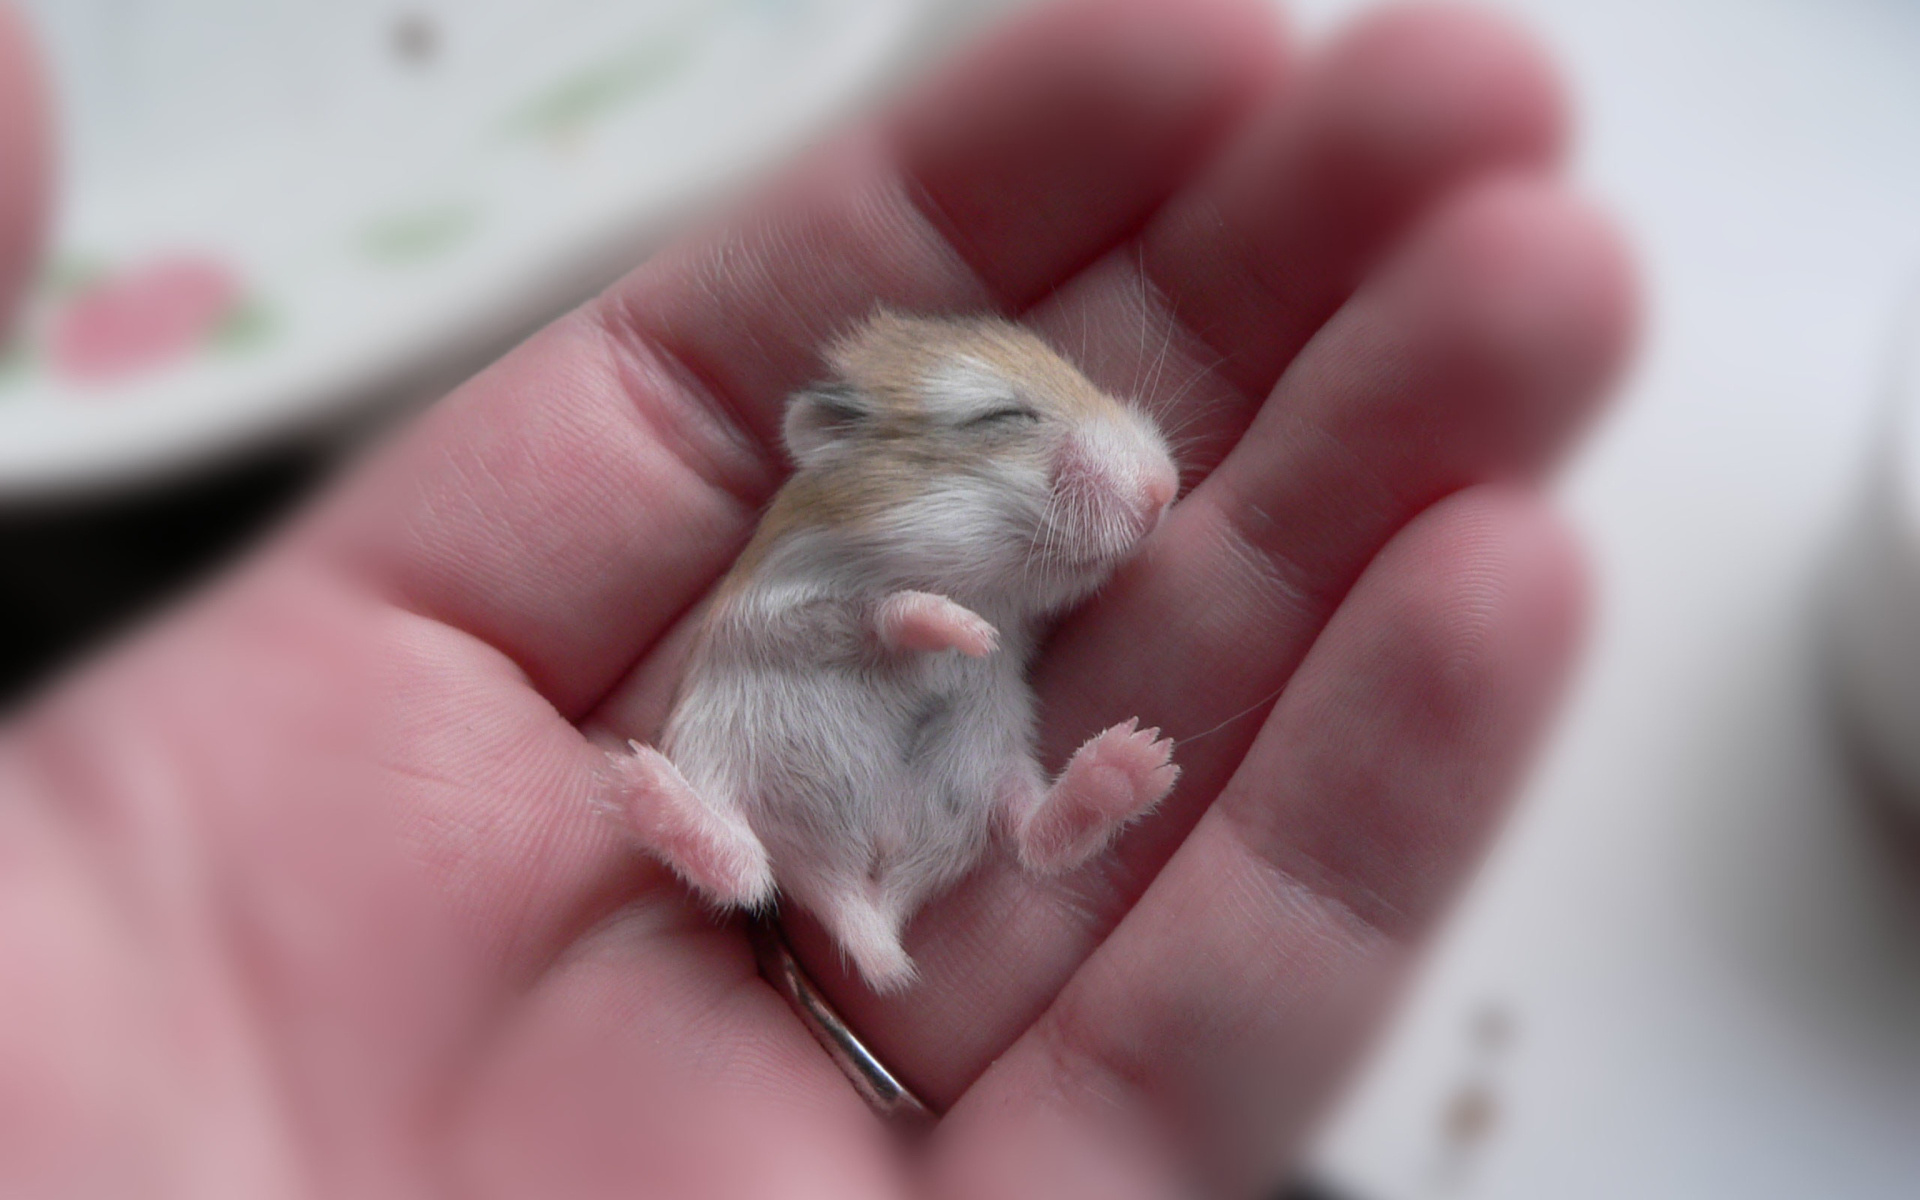 Baby hamster wallpaper, Widescreen desktop view, Cute and tiny, Fluffy little pet, 1920x1200 HD Desktop